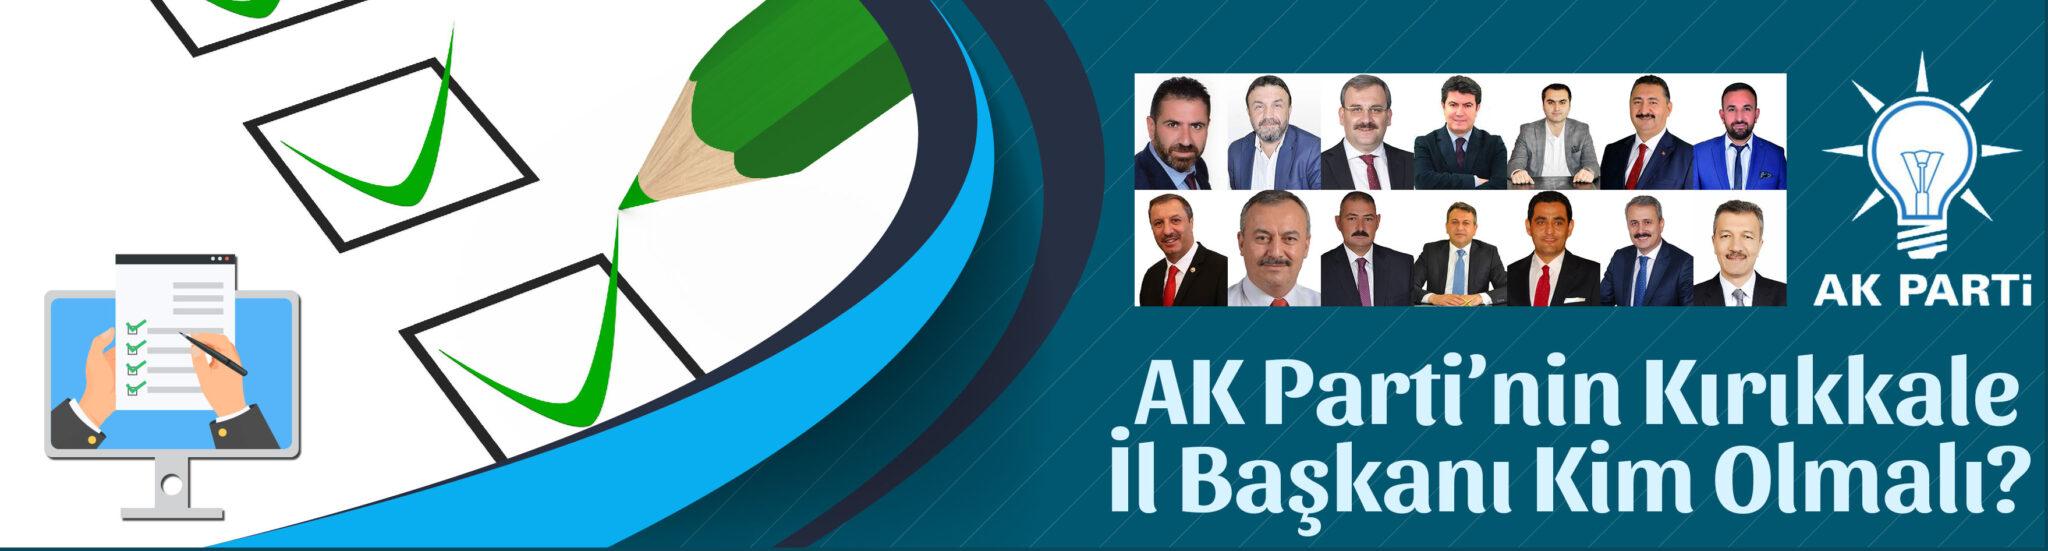 AK Parti Kırıkkale İl Başkanı Kim Olmalı? - Kırıkkale Haber, Son Dakika Kırıkkale Haberleri